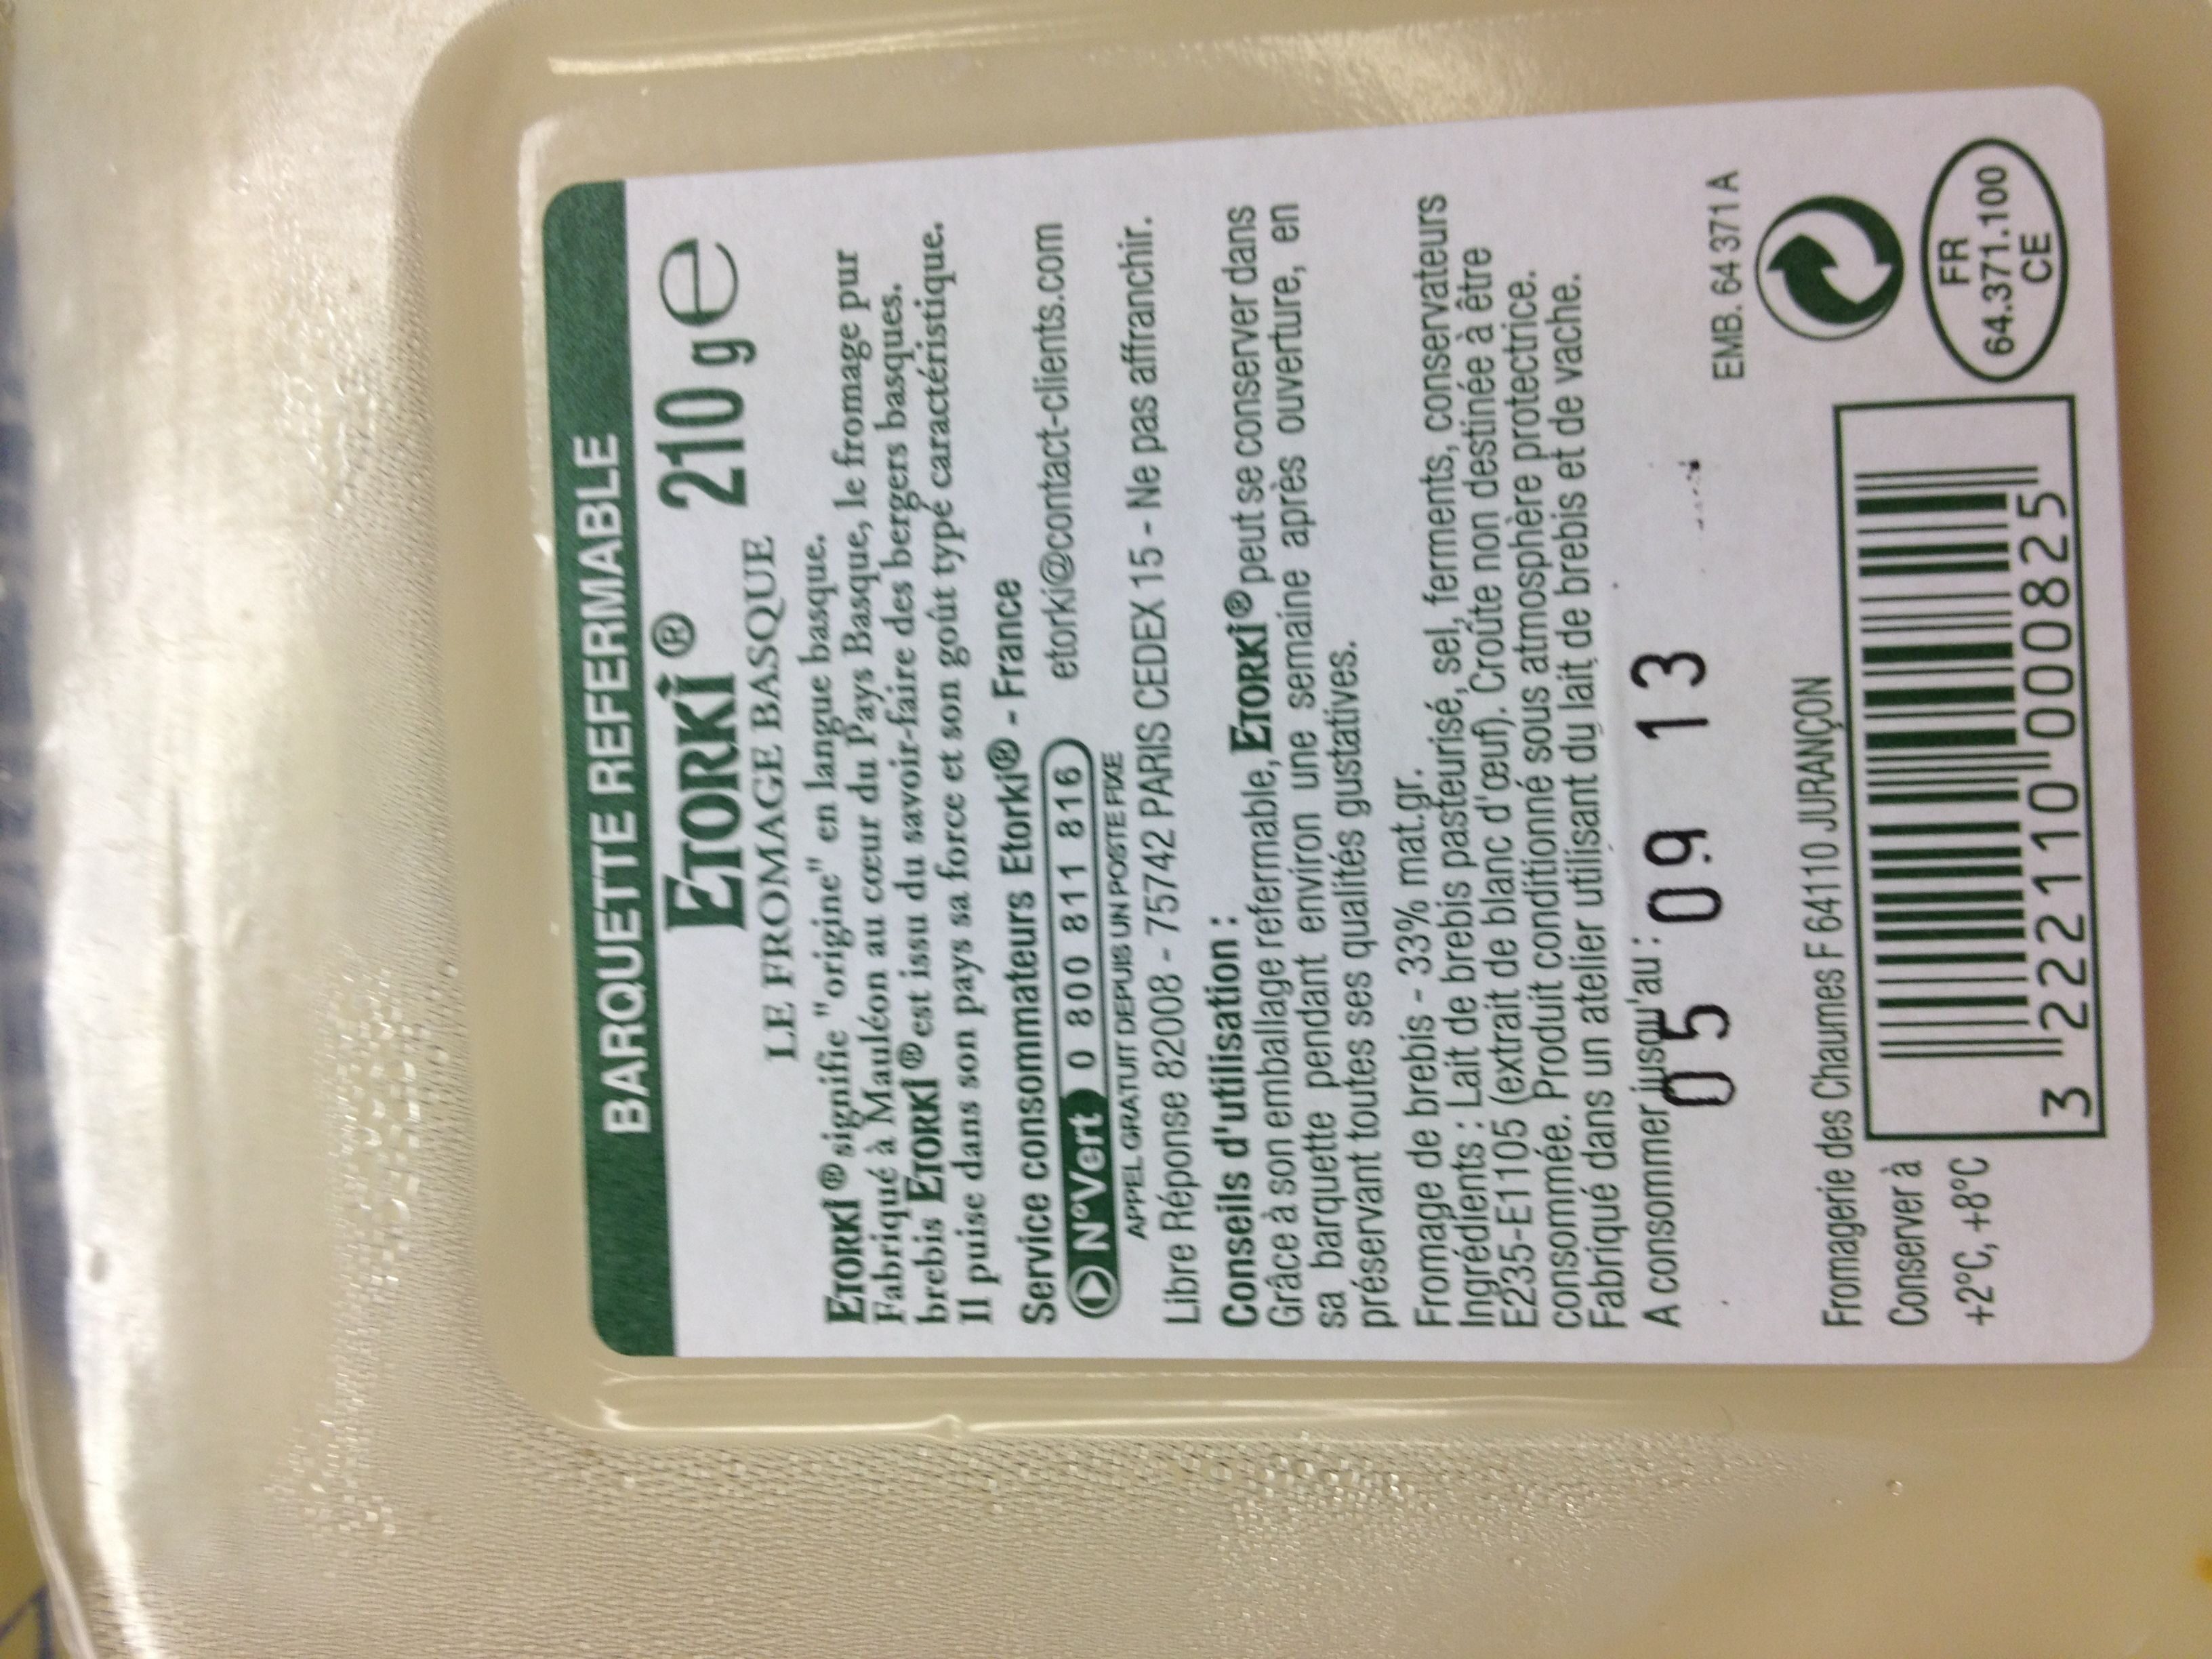 Etorki ® (33% MG) - Ingrediënten - fr